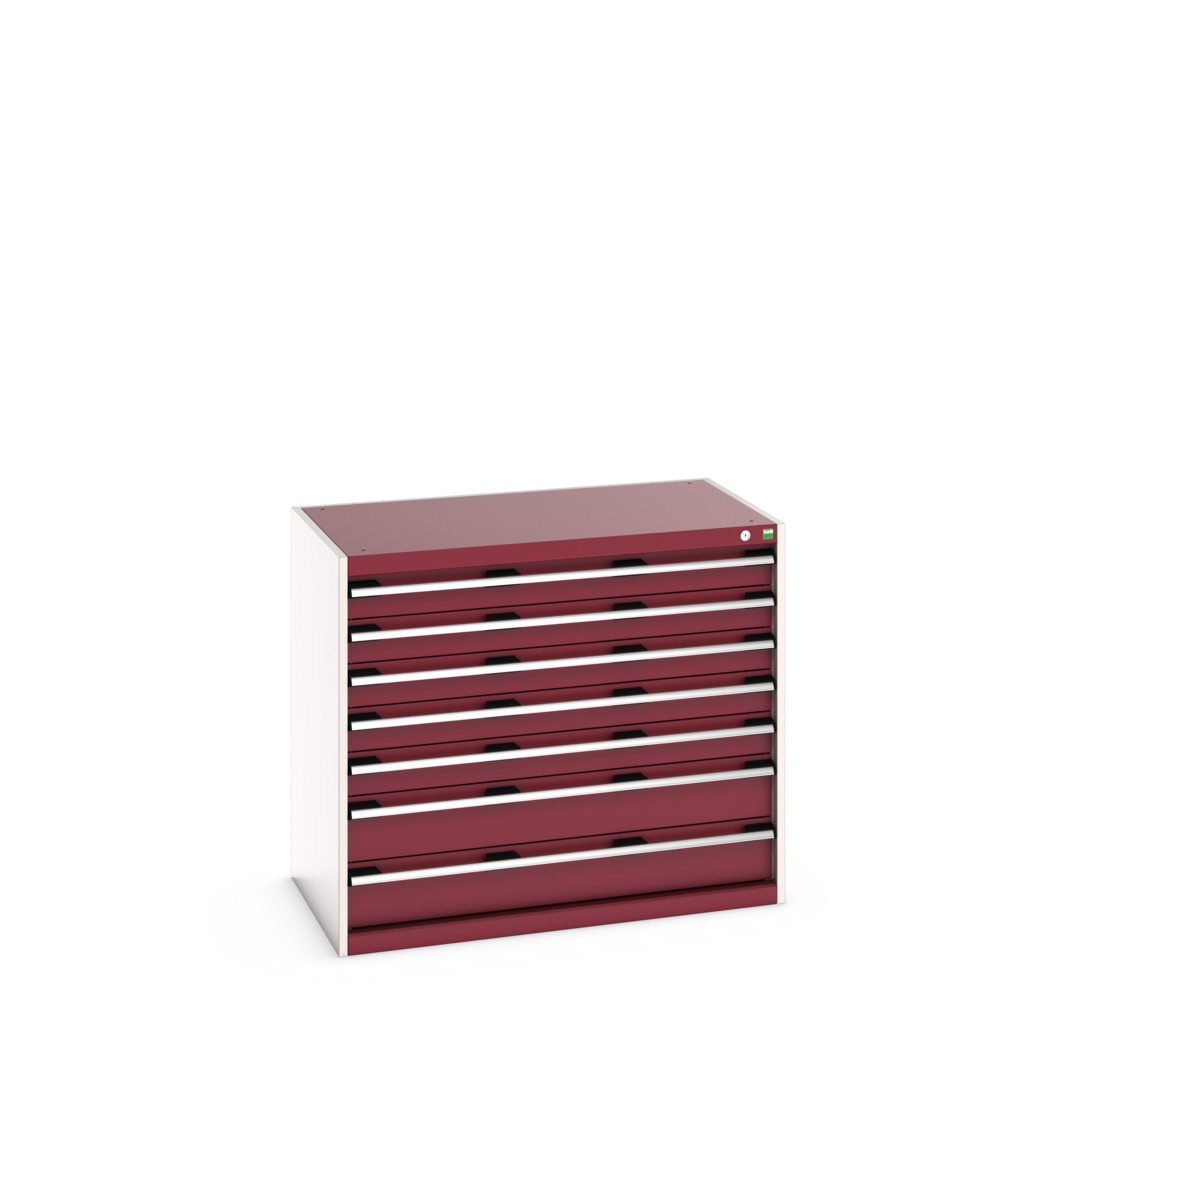 40021021.24V - cubio drawer cabinet